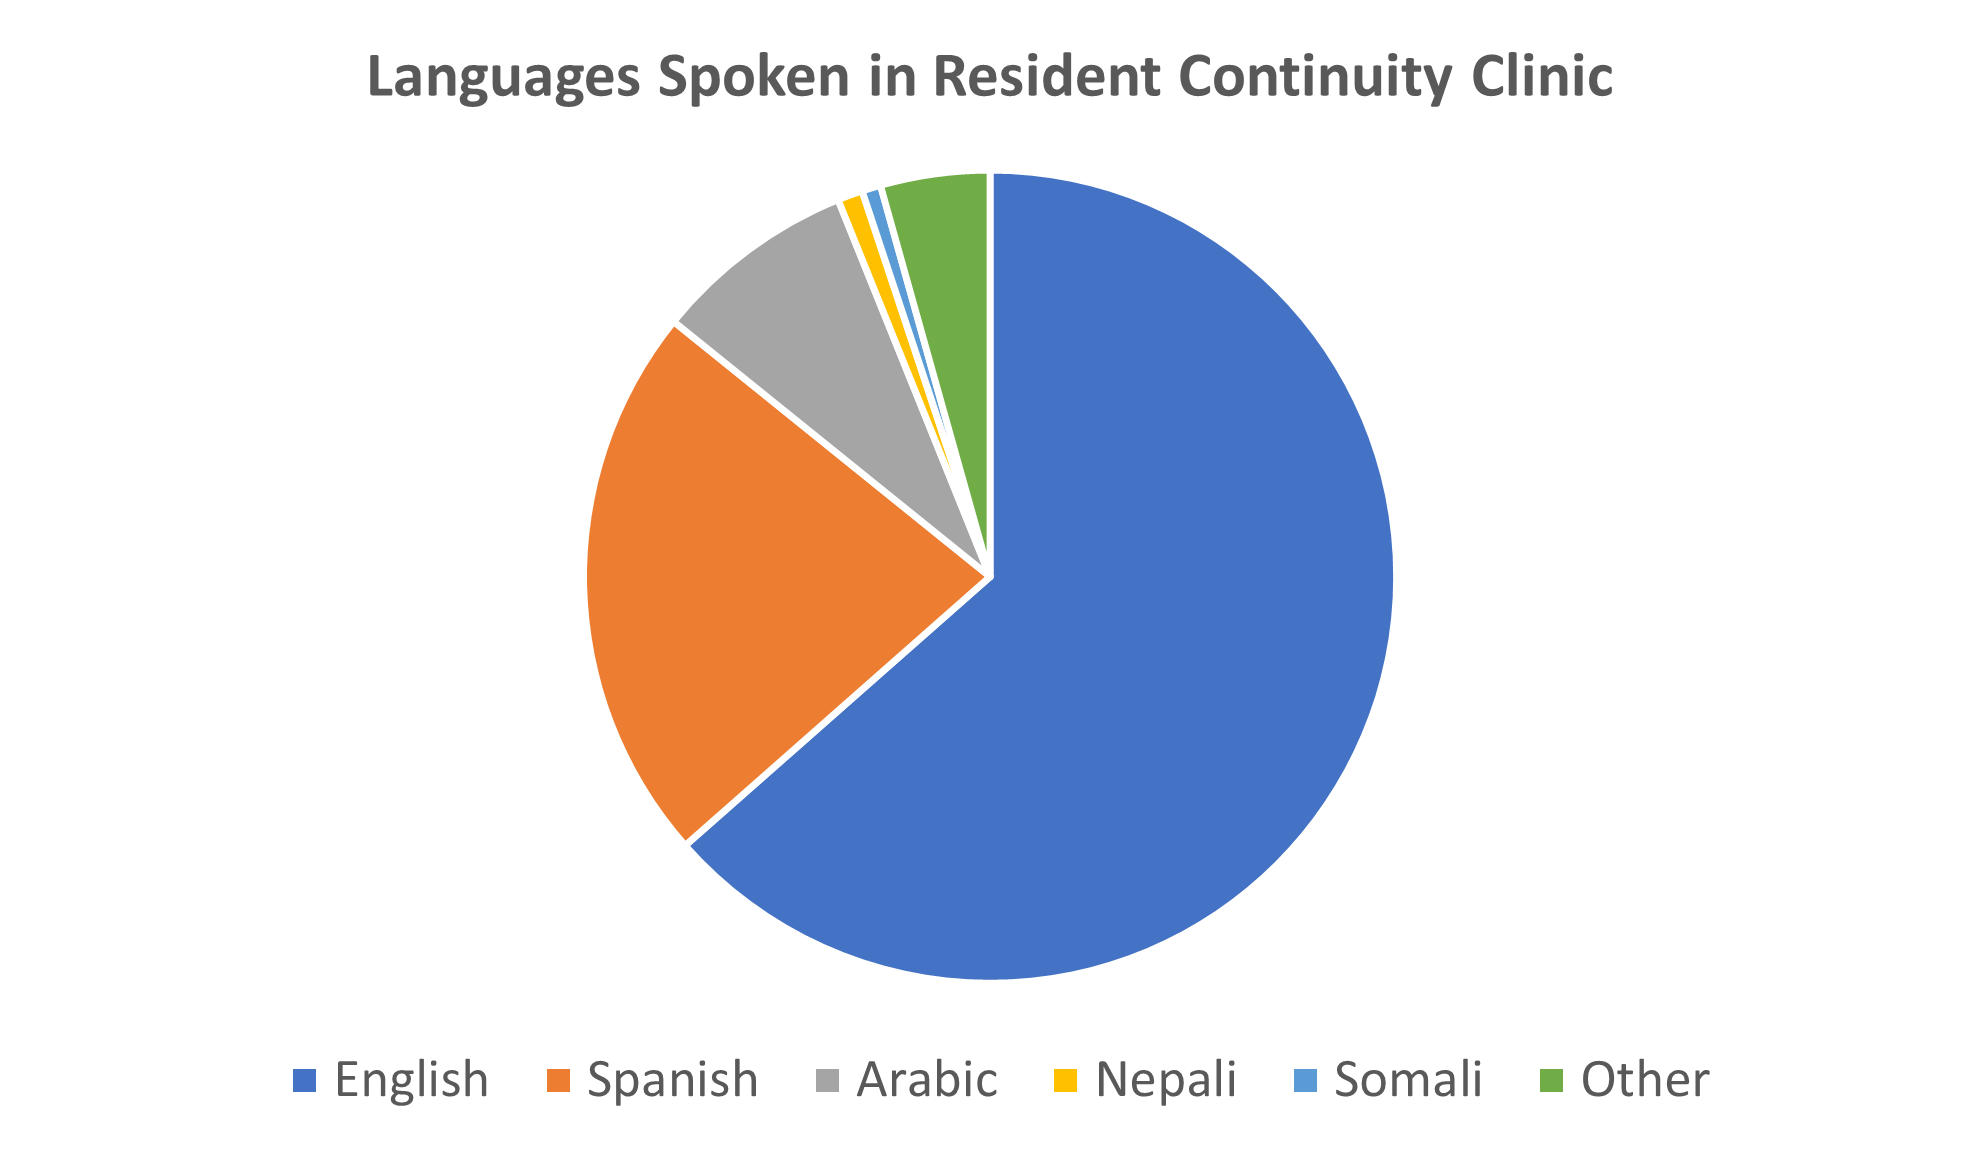 Languages Spoken Pie Chart